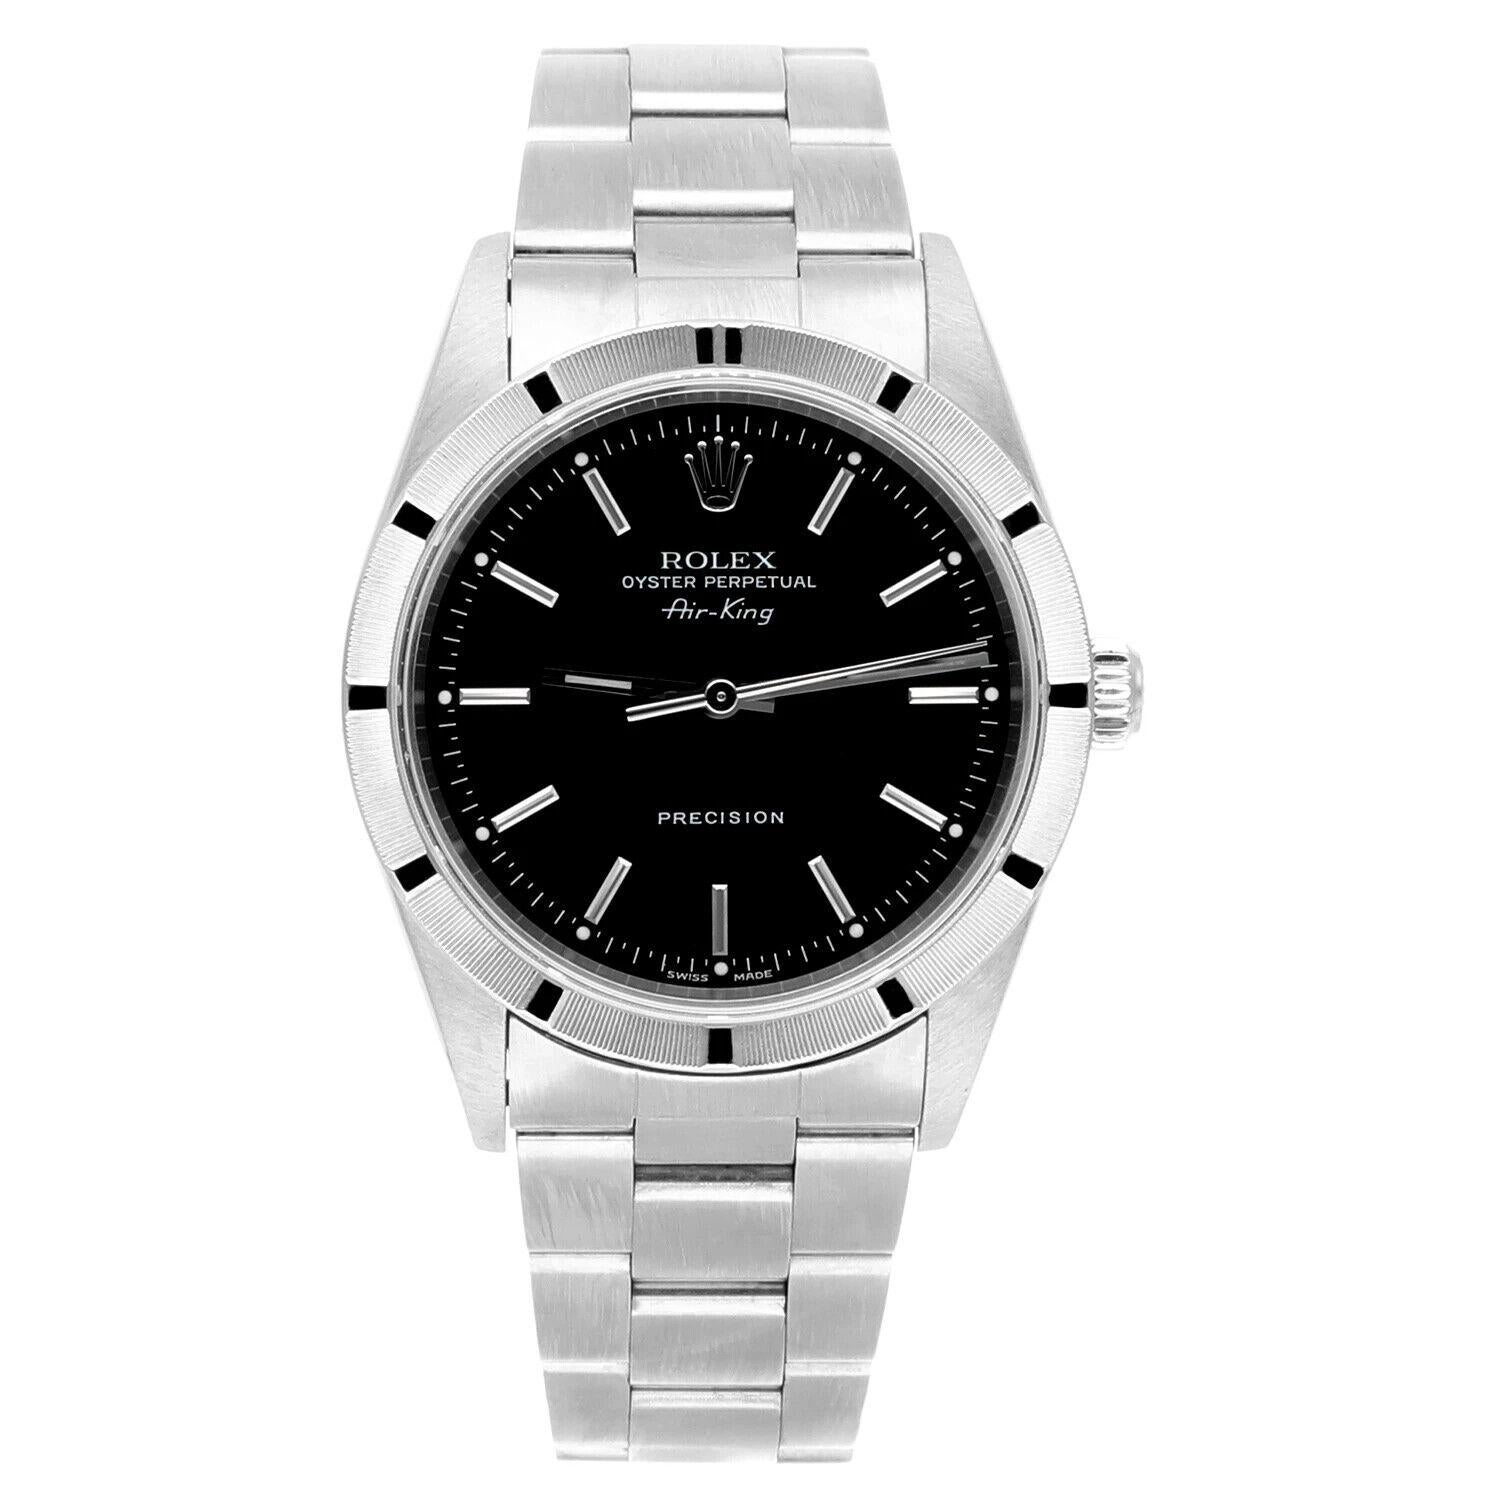 Rolex Air King 34mm Stainless Steel Watch Cadran noir Lunette tournante Montre unisexe 14010, Circa 2001 Série Y.
Cette montre a été professionnellement polie, révisée et est en excellent état général. Il n'y a absolument aucune rayure ou